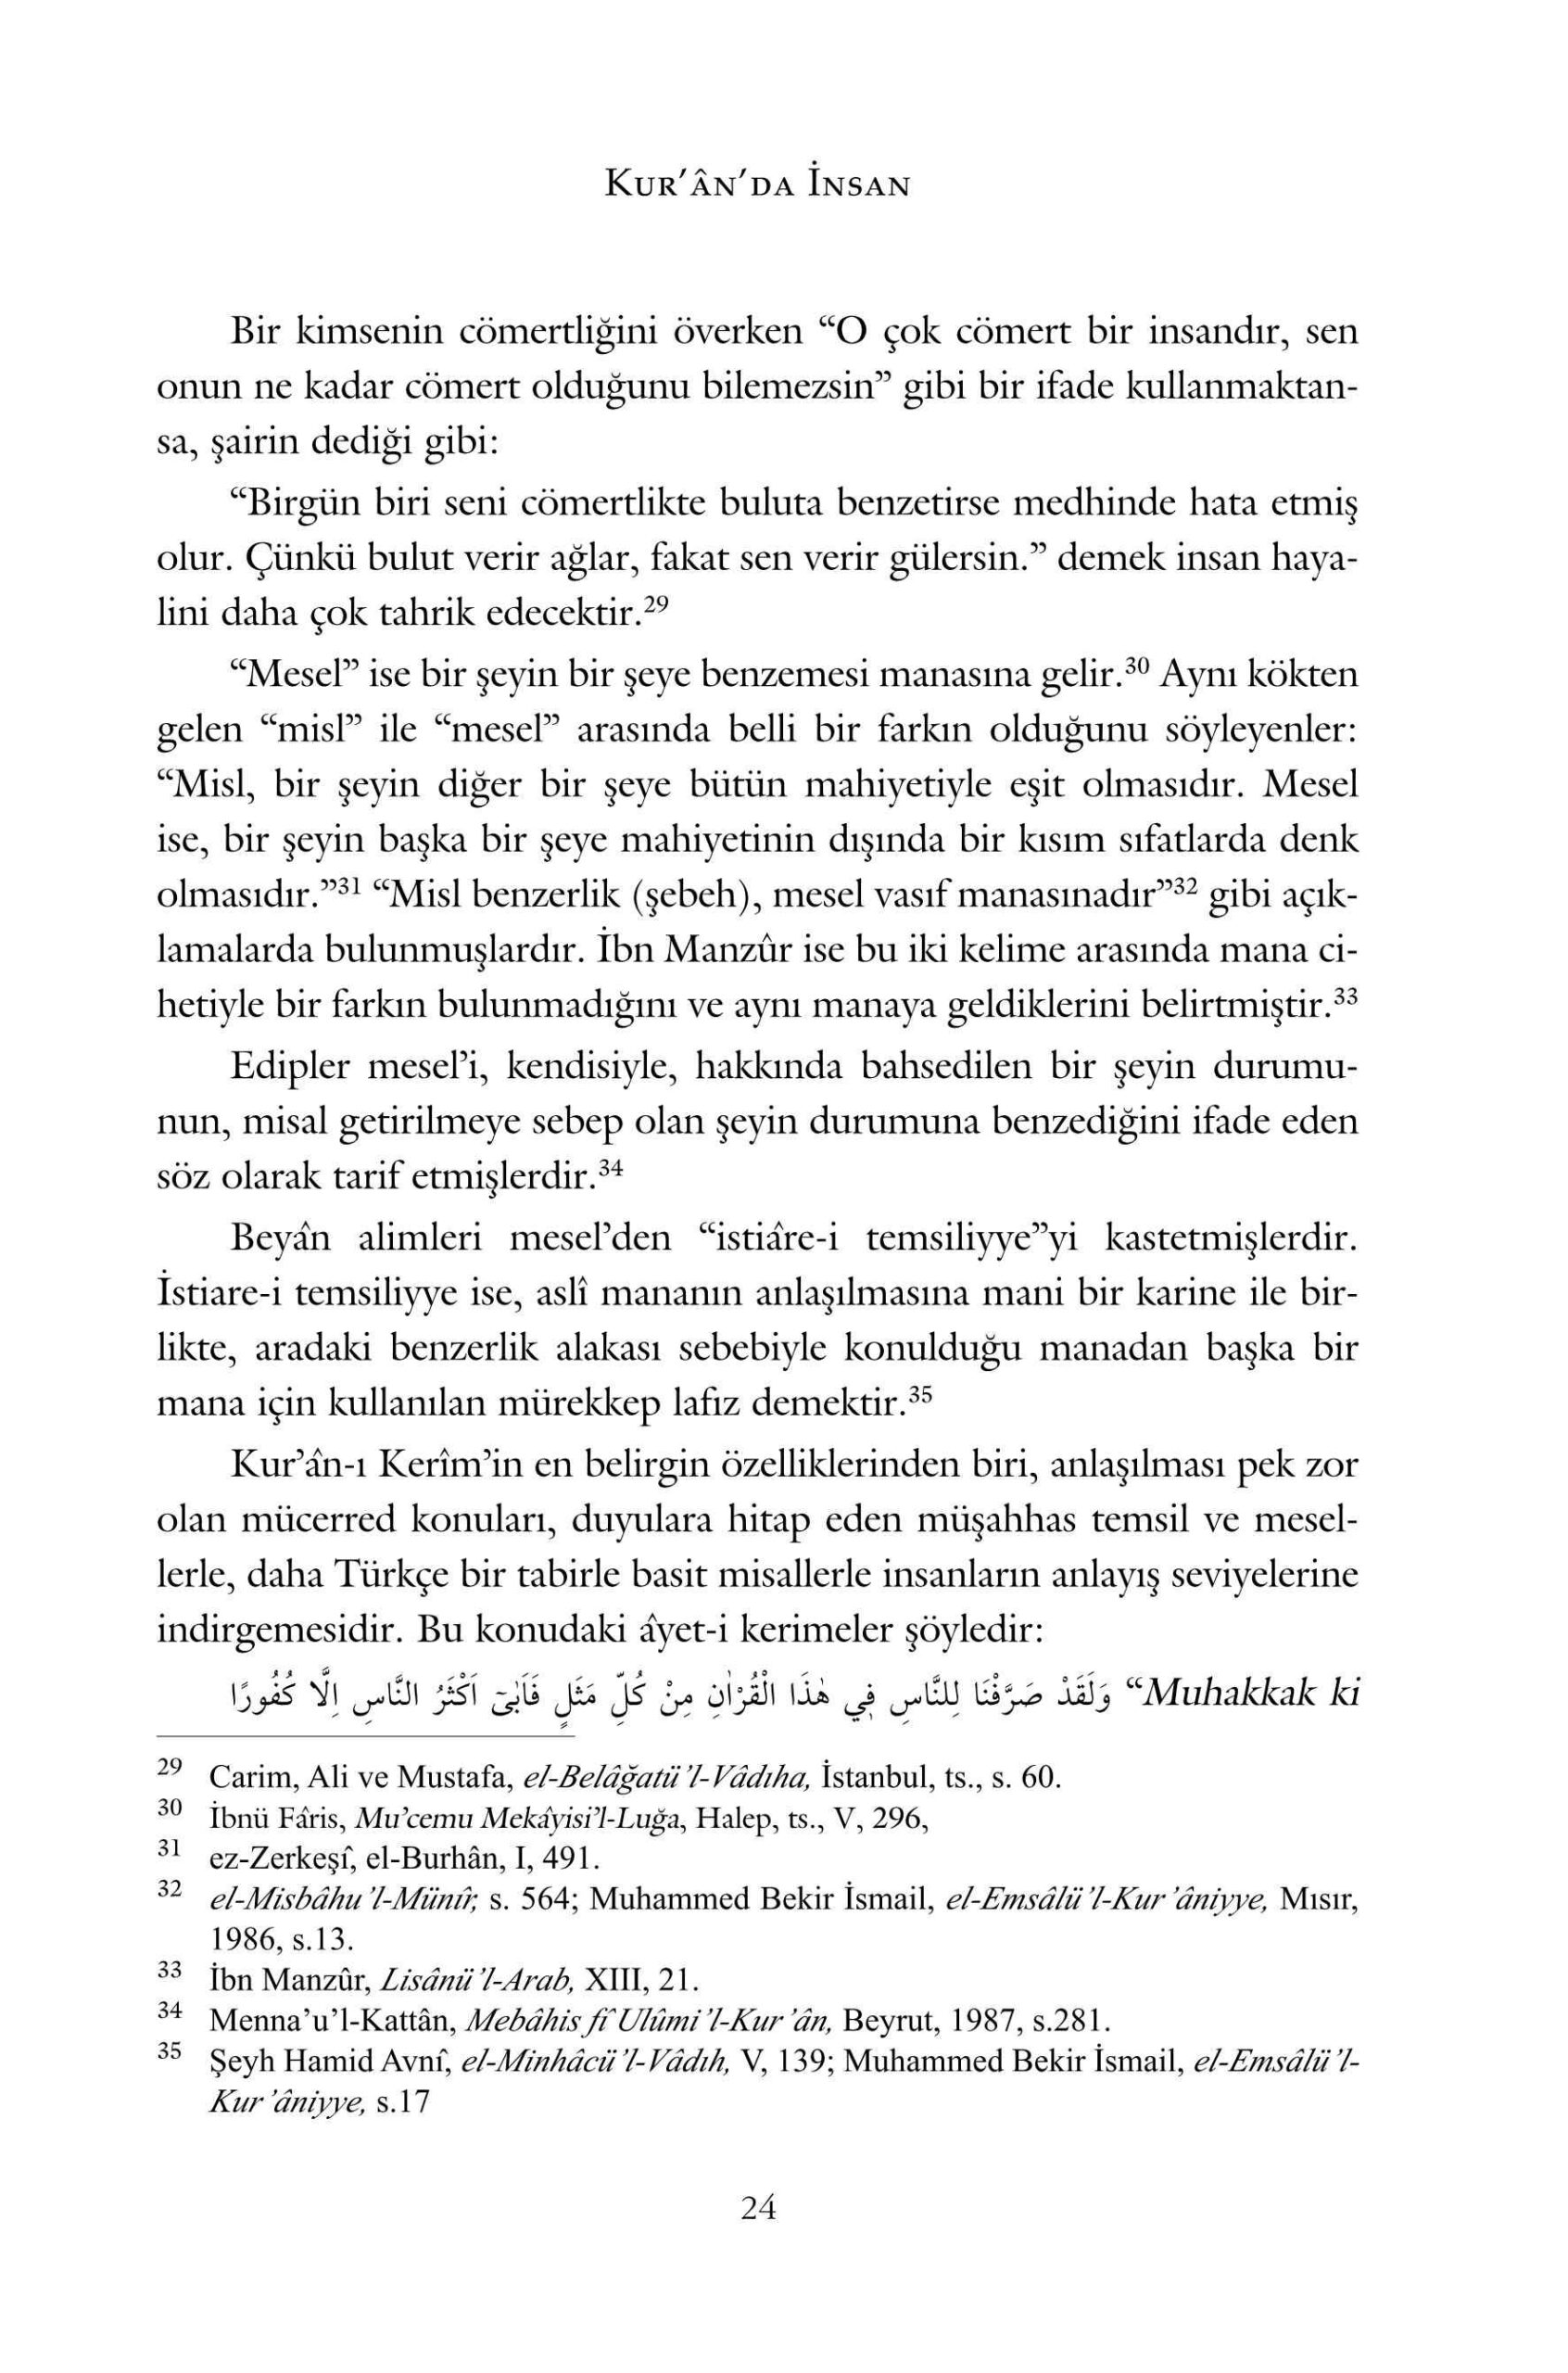 Omer Celik - Tesbih Temsil ve Tasvirler Isiğinda Kuranda Insan - IsikAkademiY.pdf, 441-Sayfa 